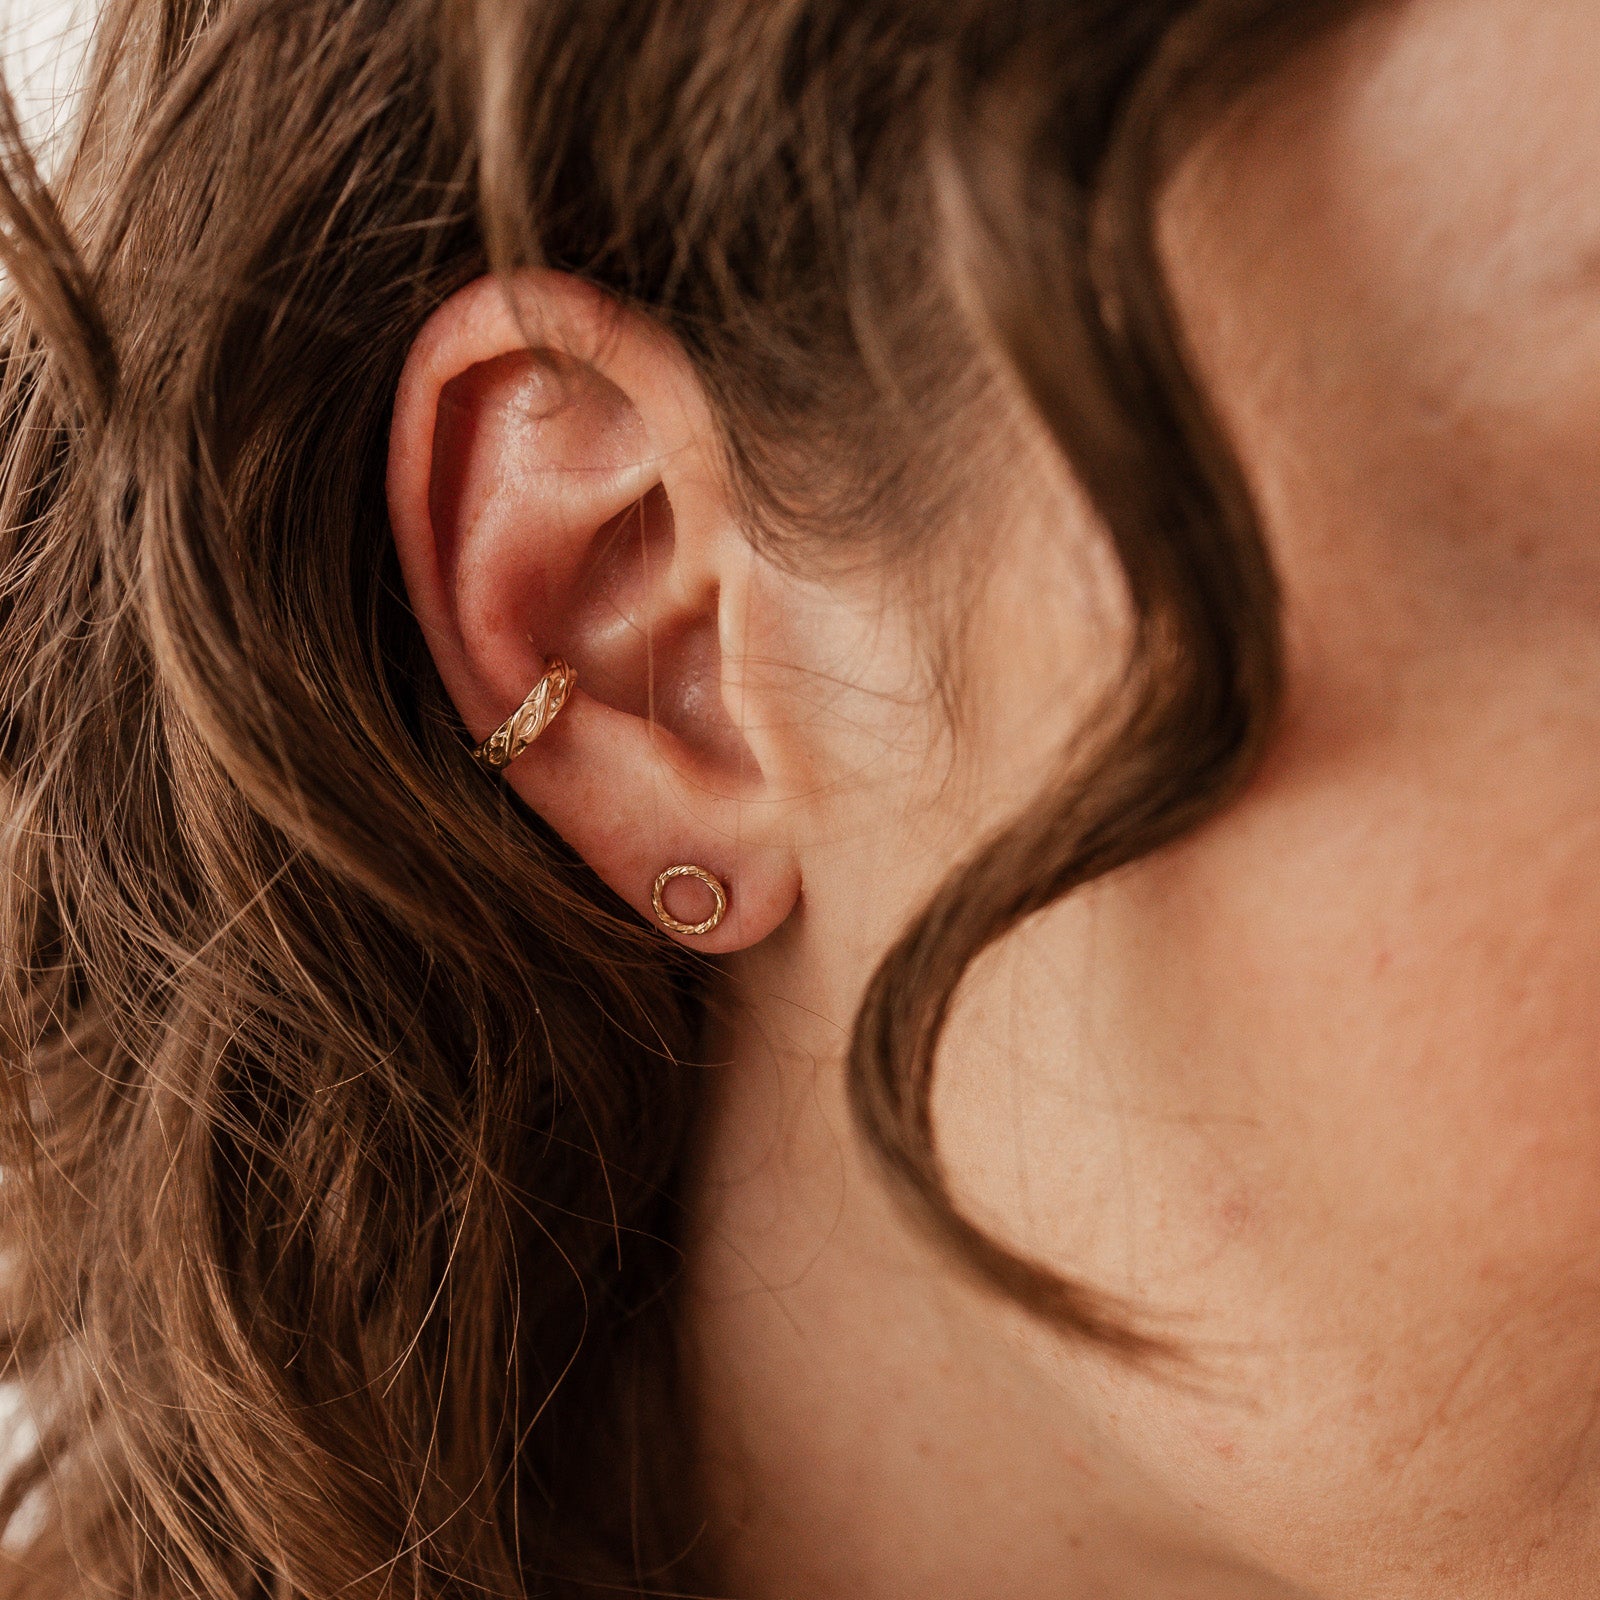  Patterned Ear Cuff